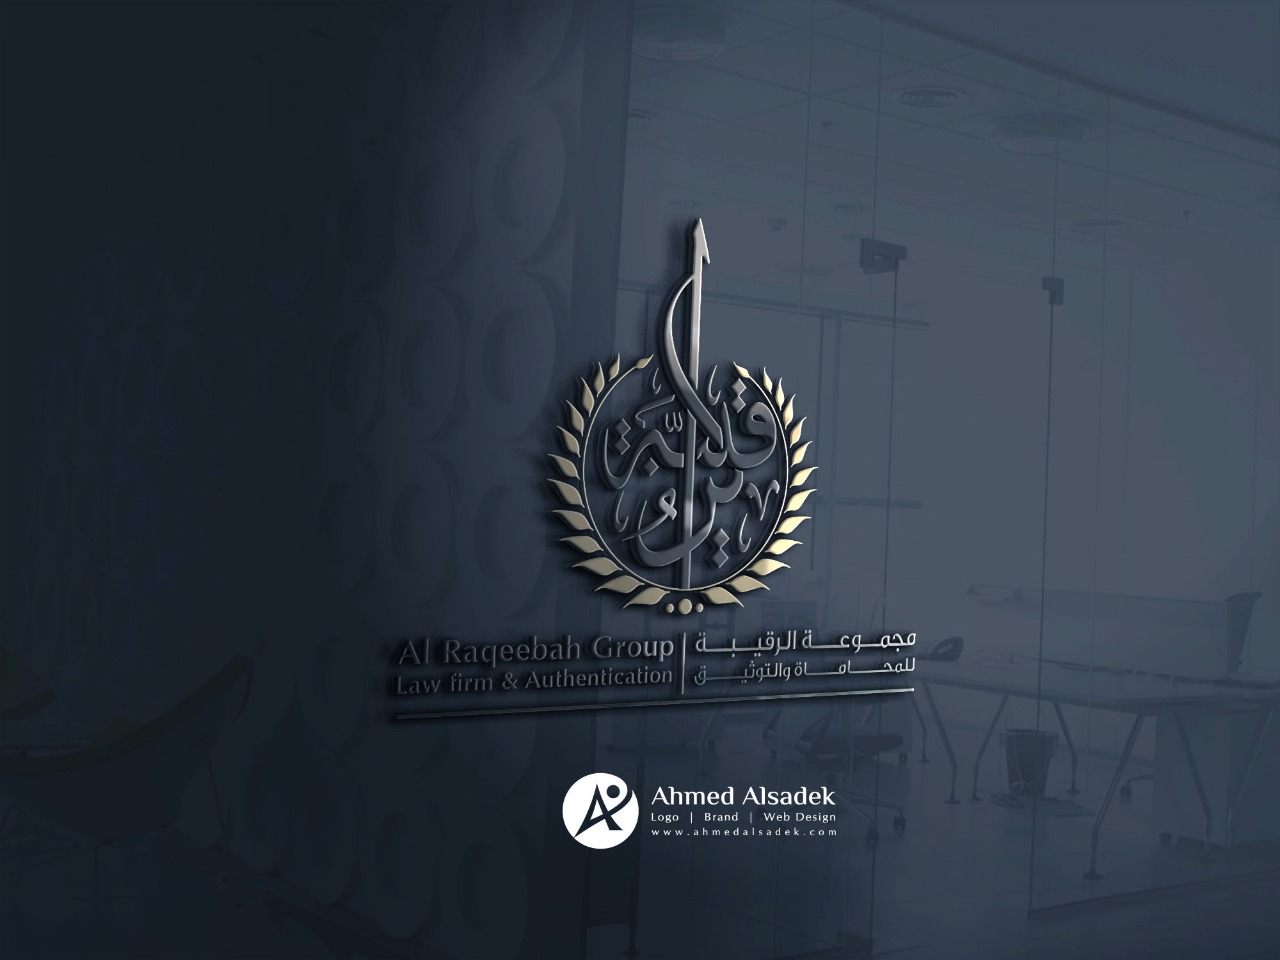 تصميم شعار مجموعة الرقيب للمحاماه في المدينة المنورة السعودية 4